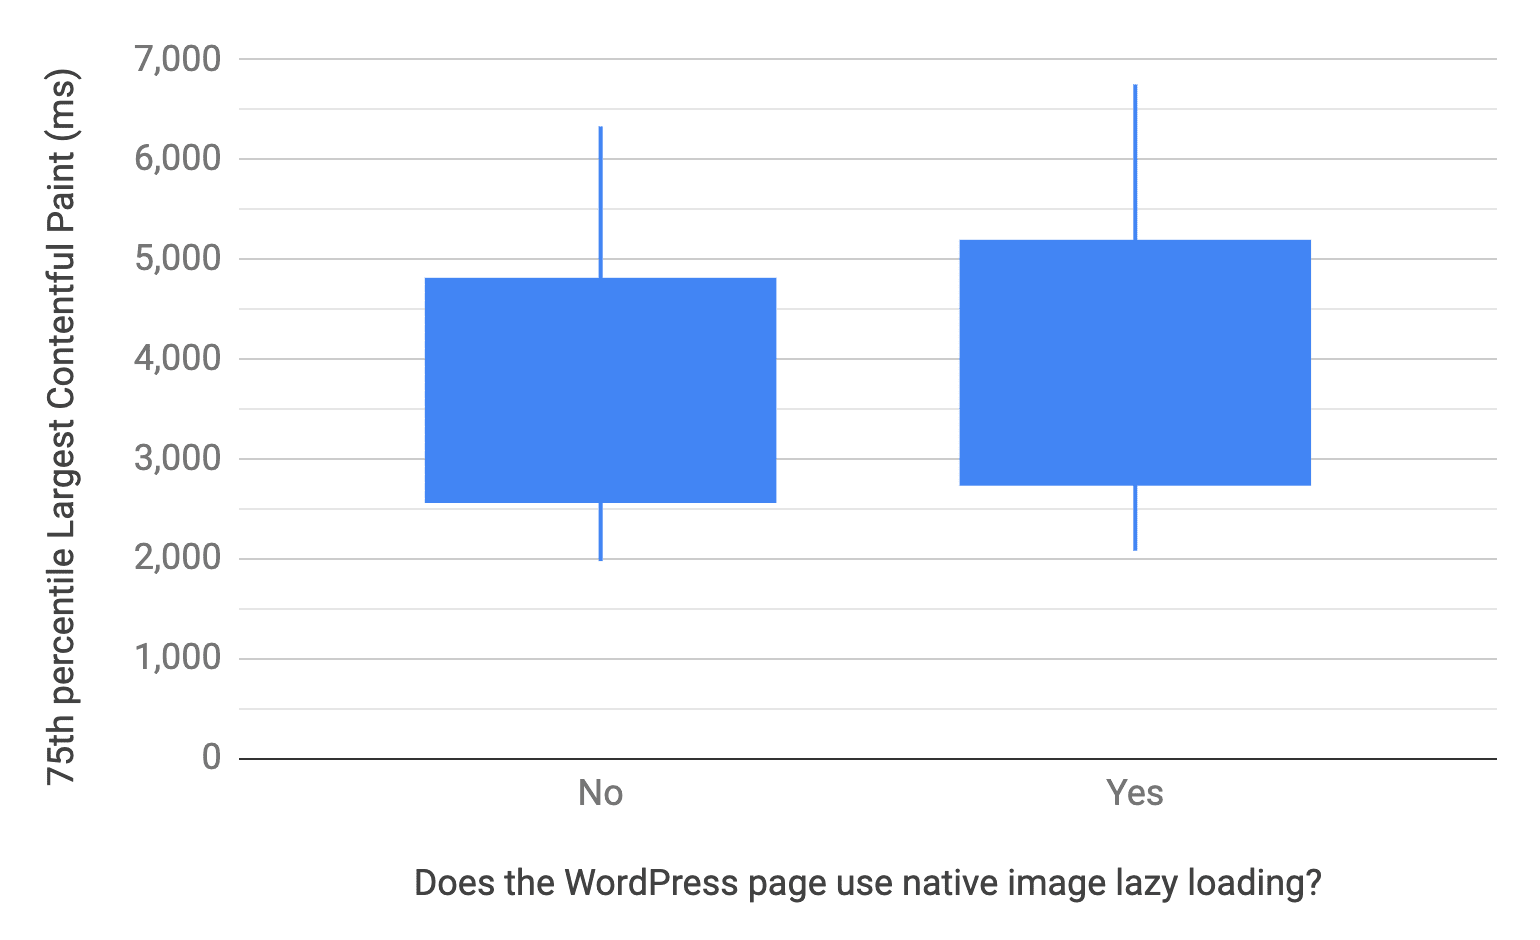 बॉक्स और व्हिस्कर चार्ट, WordPress पेजों के लिए 10, 25, 75, और 90वें पर्सेंटाइल दिखा रहा है. ये ऐसे पेज हैं जो नेटिव इमेज लेज़ी लोडिंग का इस्तेमाल करते हैं और नहीं करते. दूसरे शब्दों में कहें, तो इसका इस्तेमाल न करने वाले पेजों का एलसीपी डिस्ट्रिब्यूशन, पिछले चार्ट की तरह ही तेज़ी से होता है.